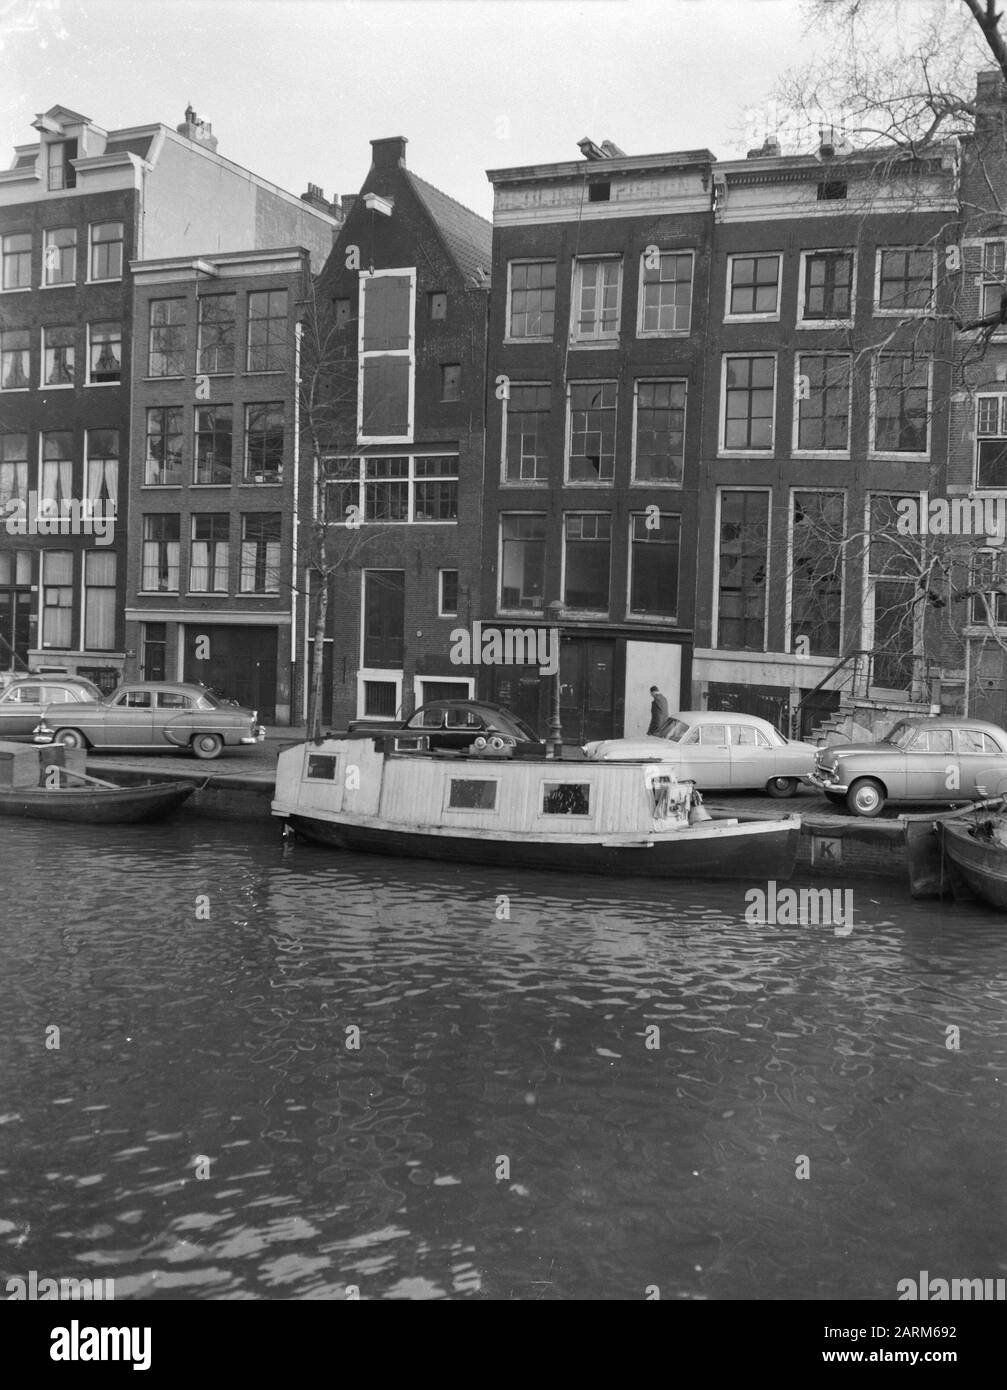 Das geheime Anhang Haus von Anne Frank Datum: 20. März 1957 Ort: Amsterdam, Noord-Holland Schlüsselwörter: Kanalhäuser, Wohnhäuser Stockfoto